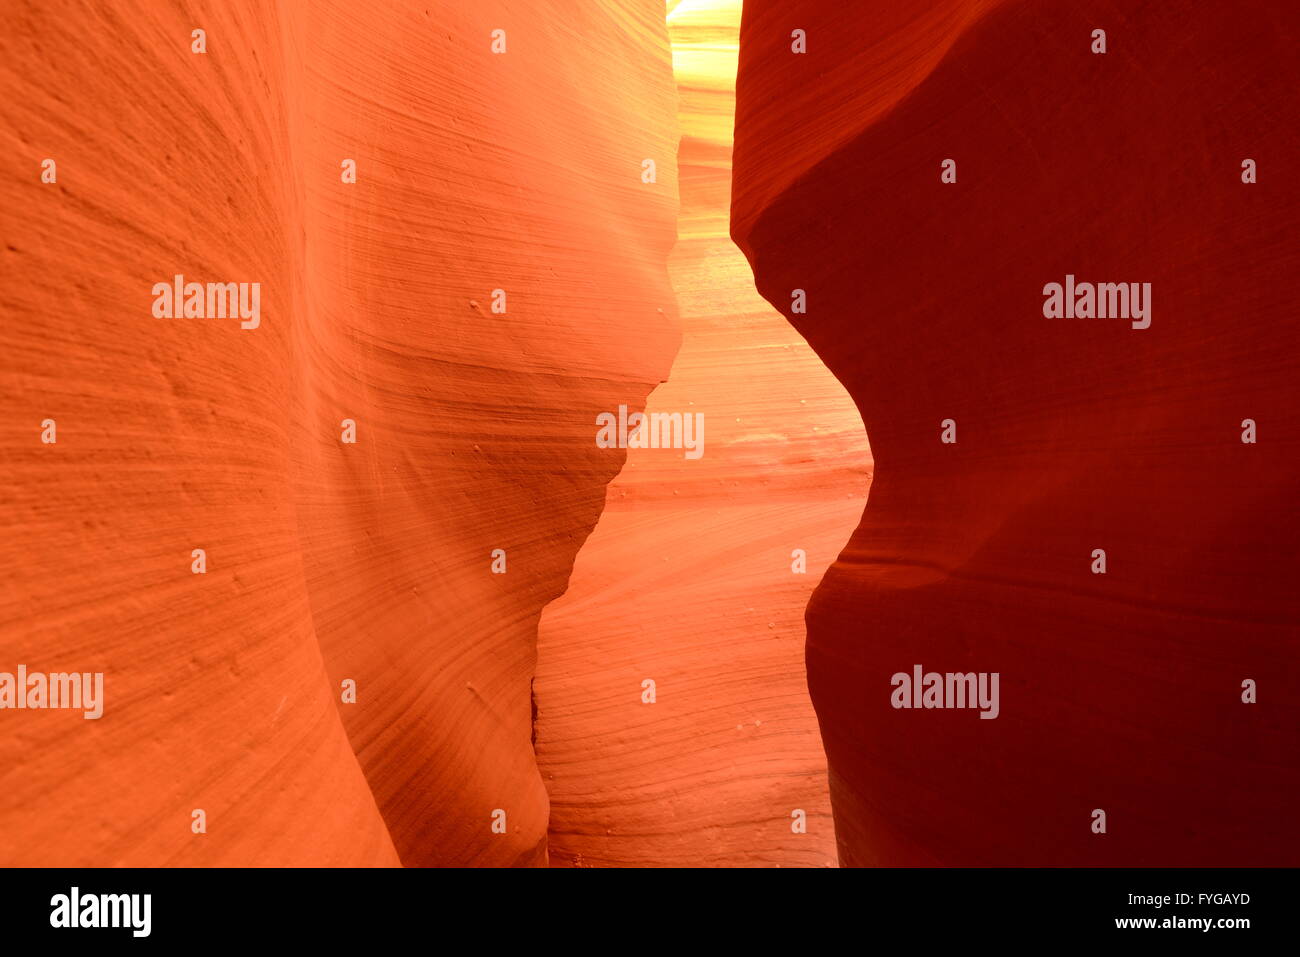 Les roches rouges - Rouge rochers de grès dans un slot canyon Banque D'Images